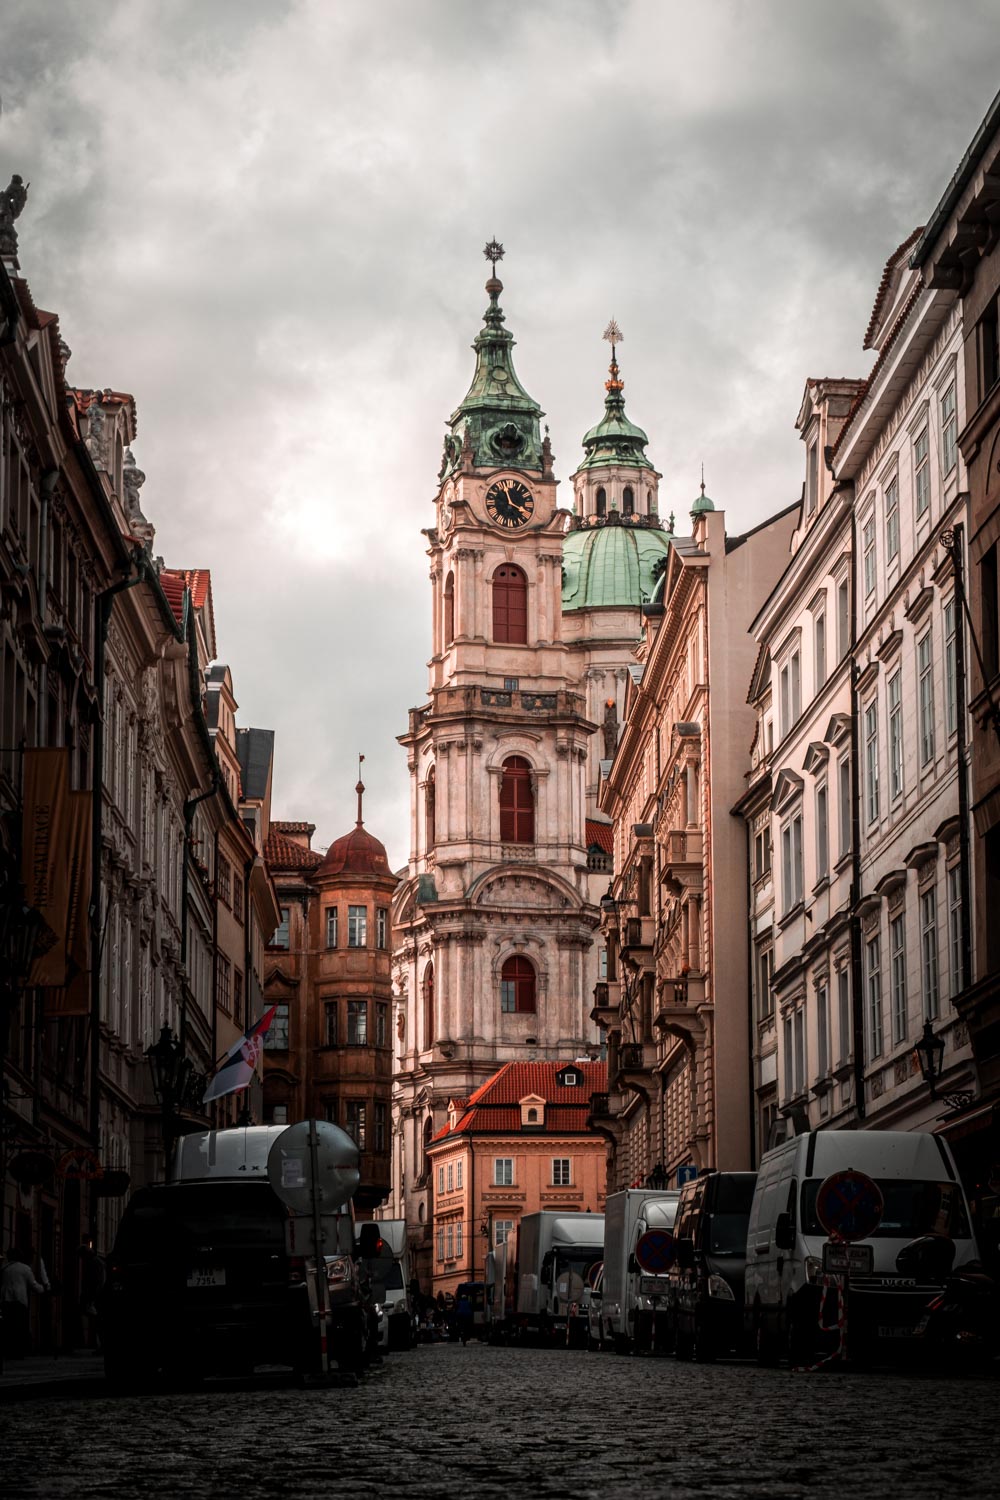 Strašidelná architektura – kostel sv. Mikuláše Praha, CZ, 2020